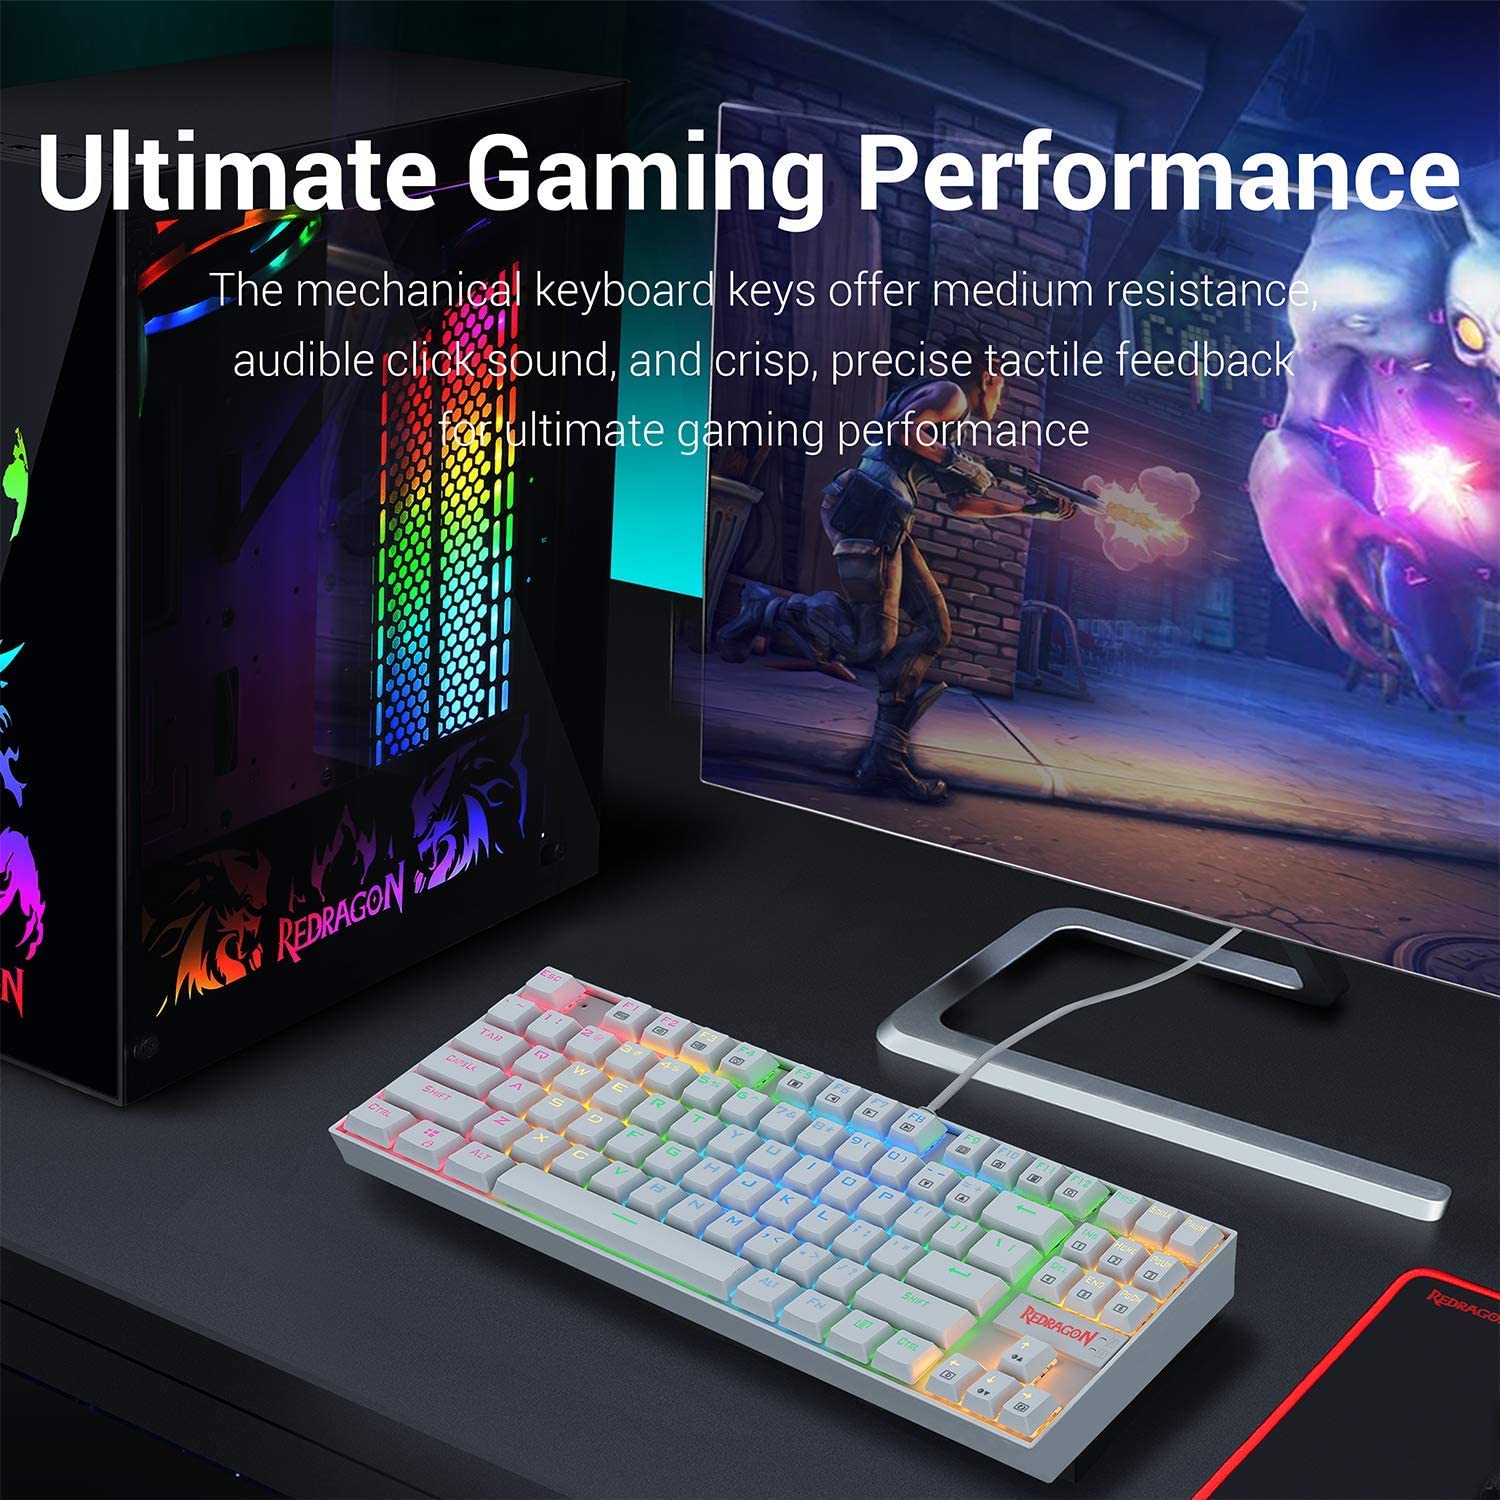 Redragon K552 Kumara White RGB Mechanical Gaming Keyboard at best price in Pakistan online shopping